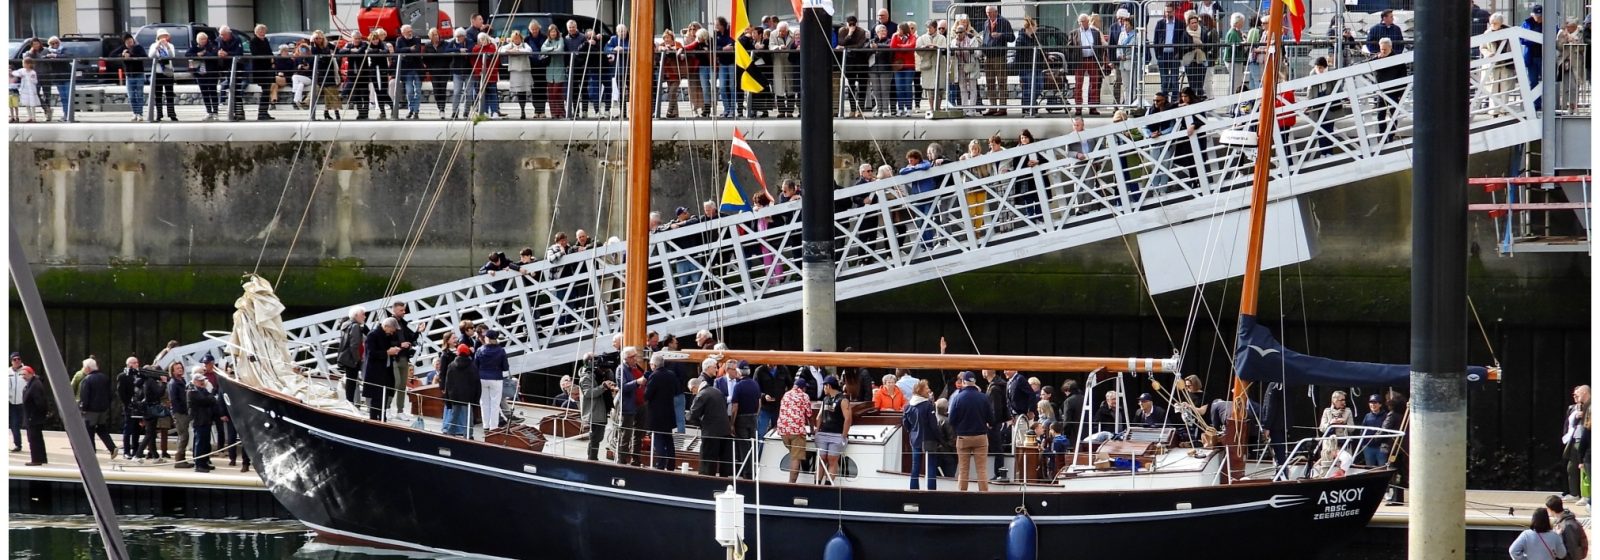 Doop gerestaureerd zeiljacht 'Askoy II' van Jacques Brel in Zeebrugge